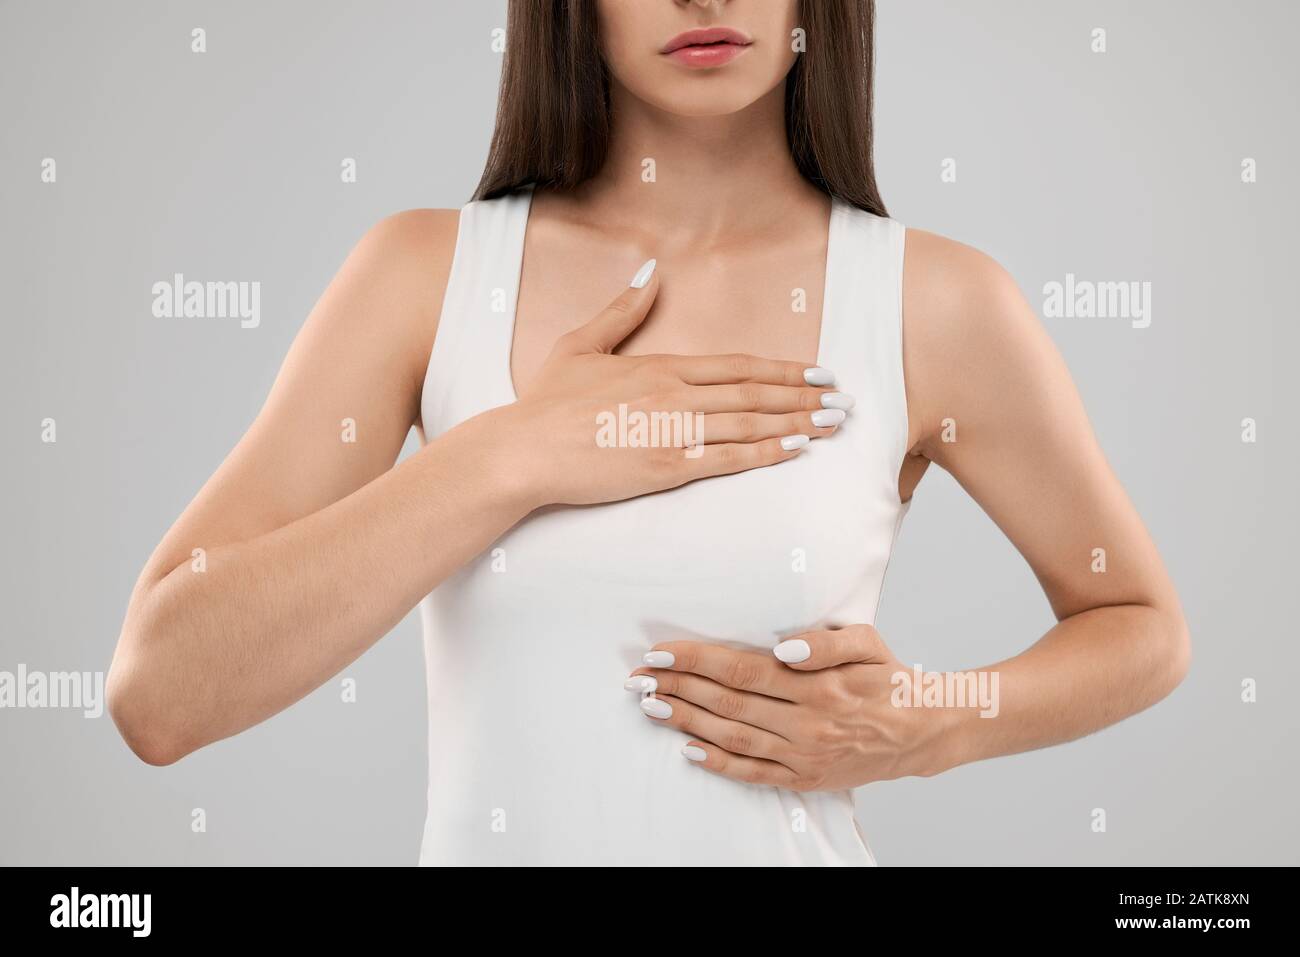 Clolse von Incognito kaukasische Frau in weißem Hemd Posing über Grau isoliert Hintergrund und berühren die Brust mit zwei Händen, weil der Kummer. Crop von brunette leiden unter Schmerzen im Herzen. Stockfoto